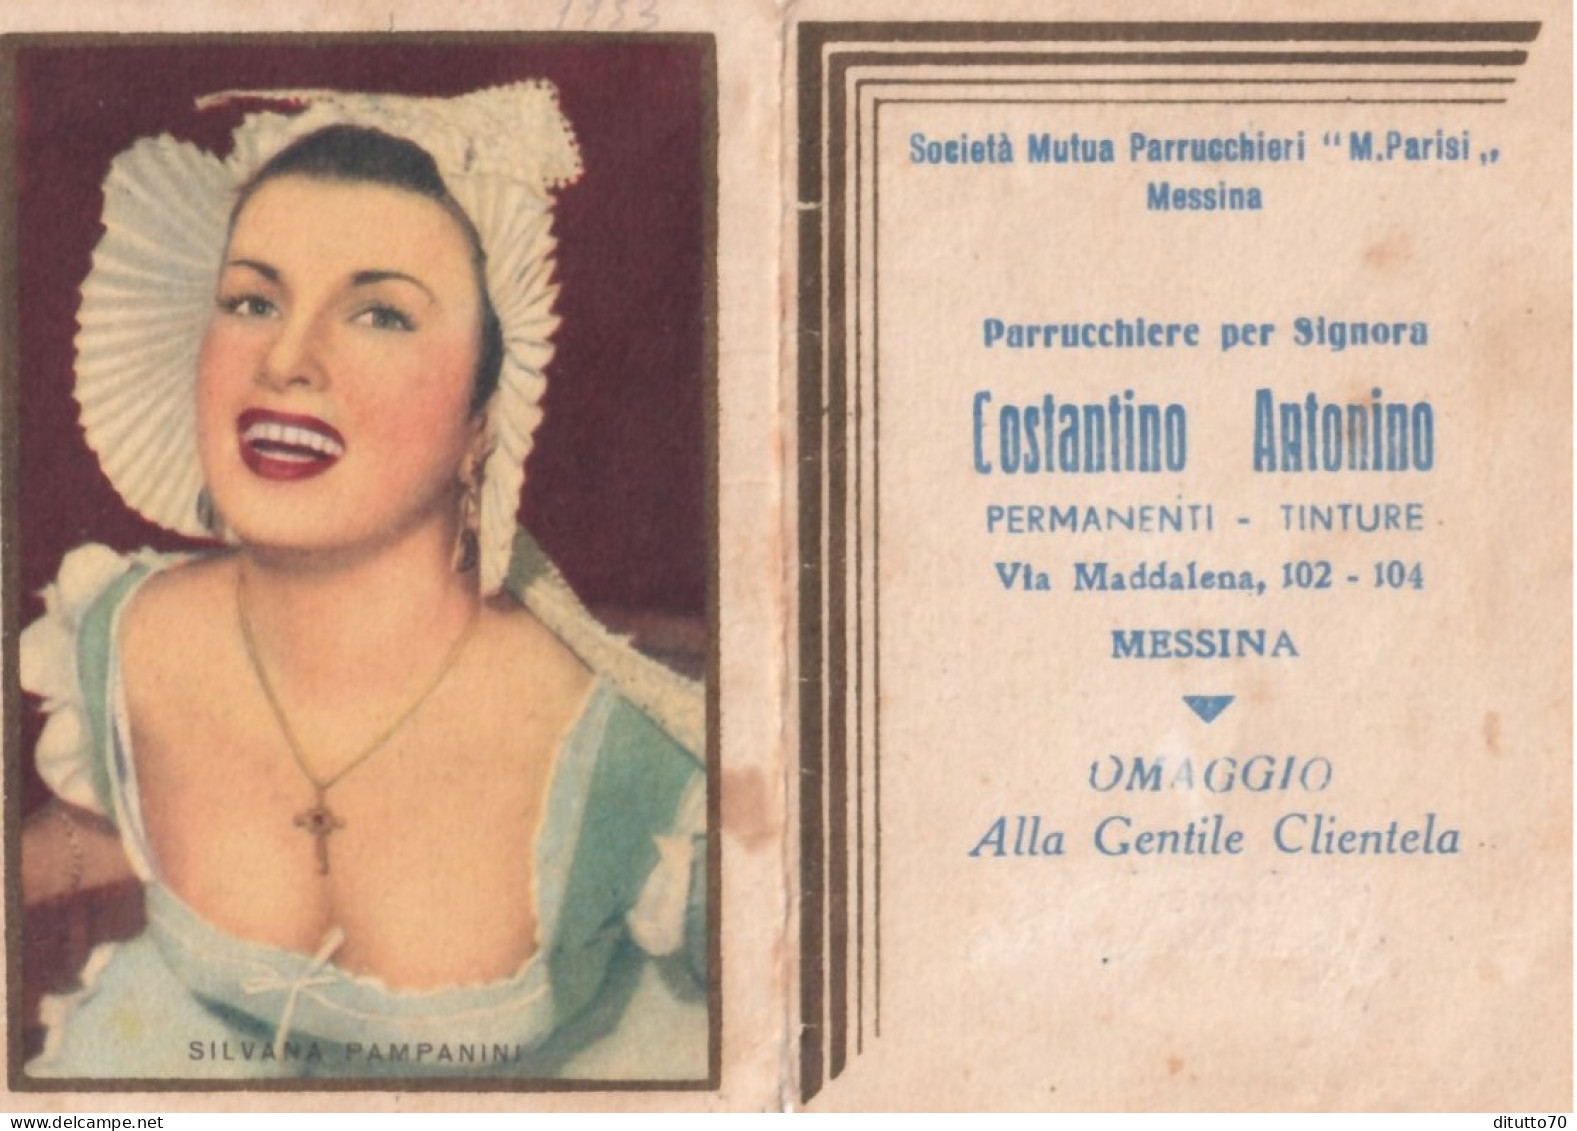 Calendarietto - Parrucchiere Per Signora - Costantino Antonio - Messina - Silvana Pampanini - Anno 1953 - Petit Format : 1941-60